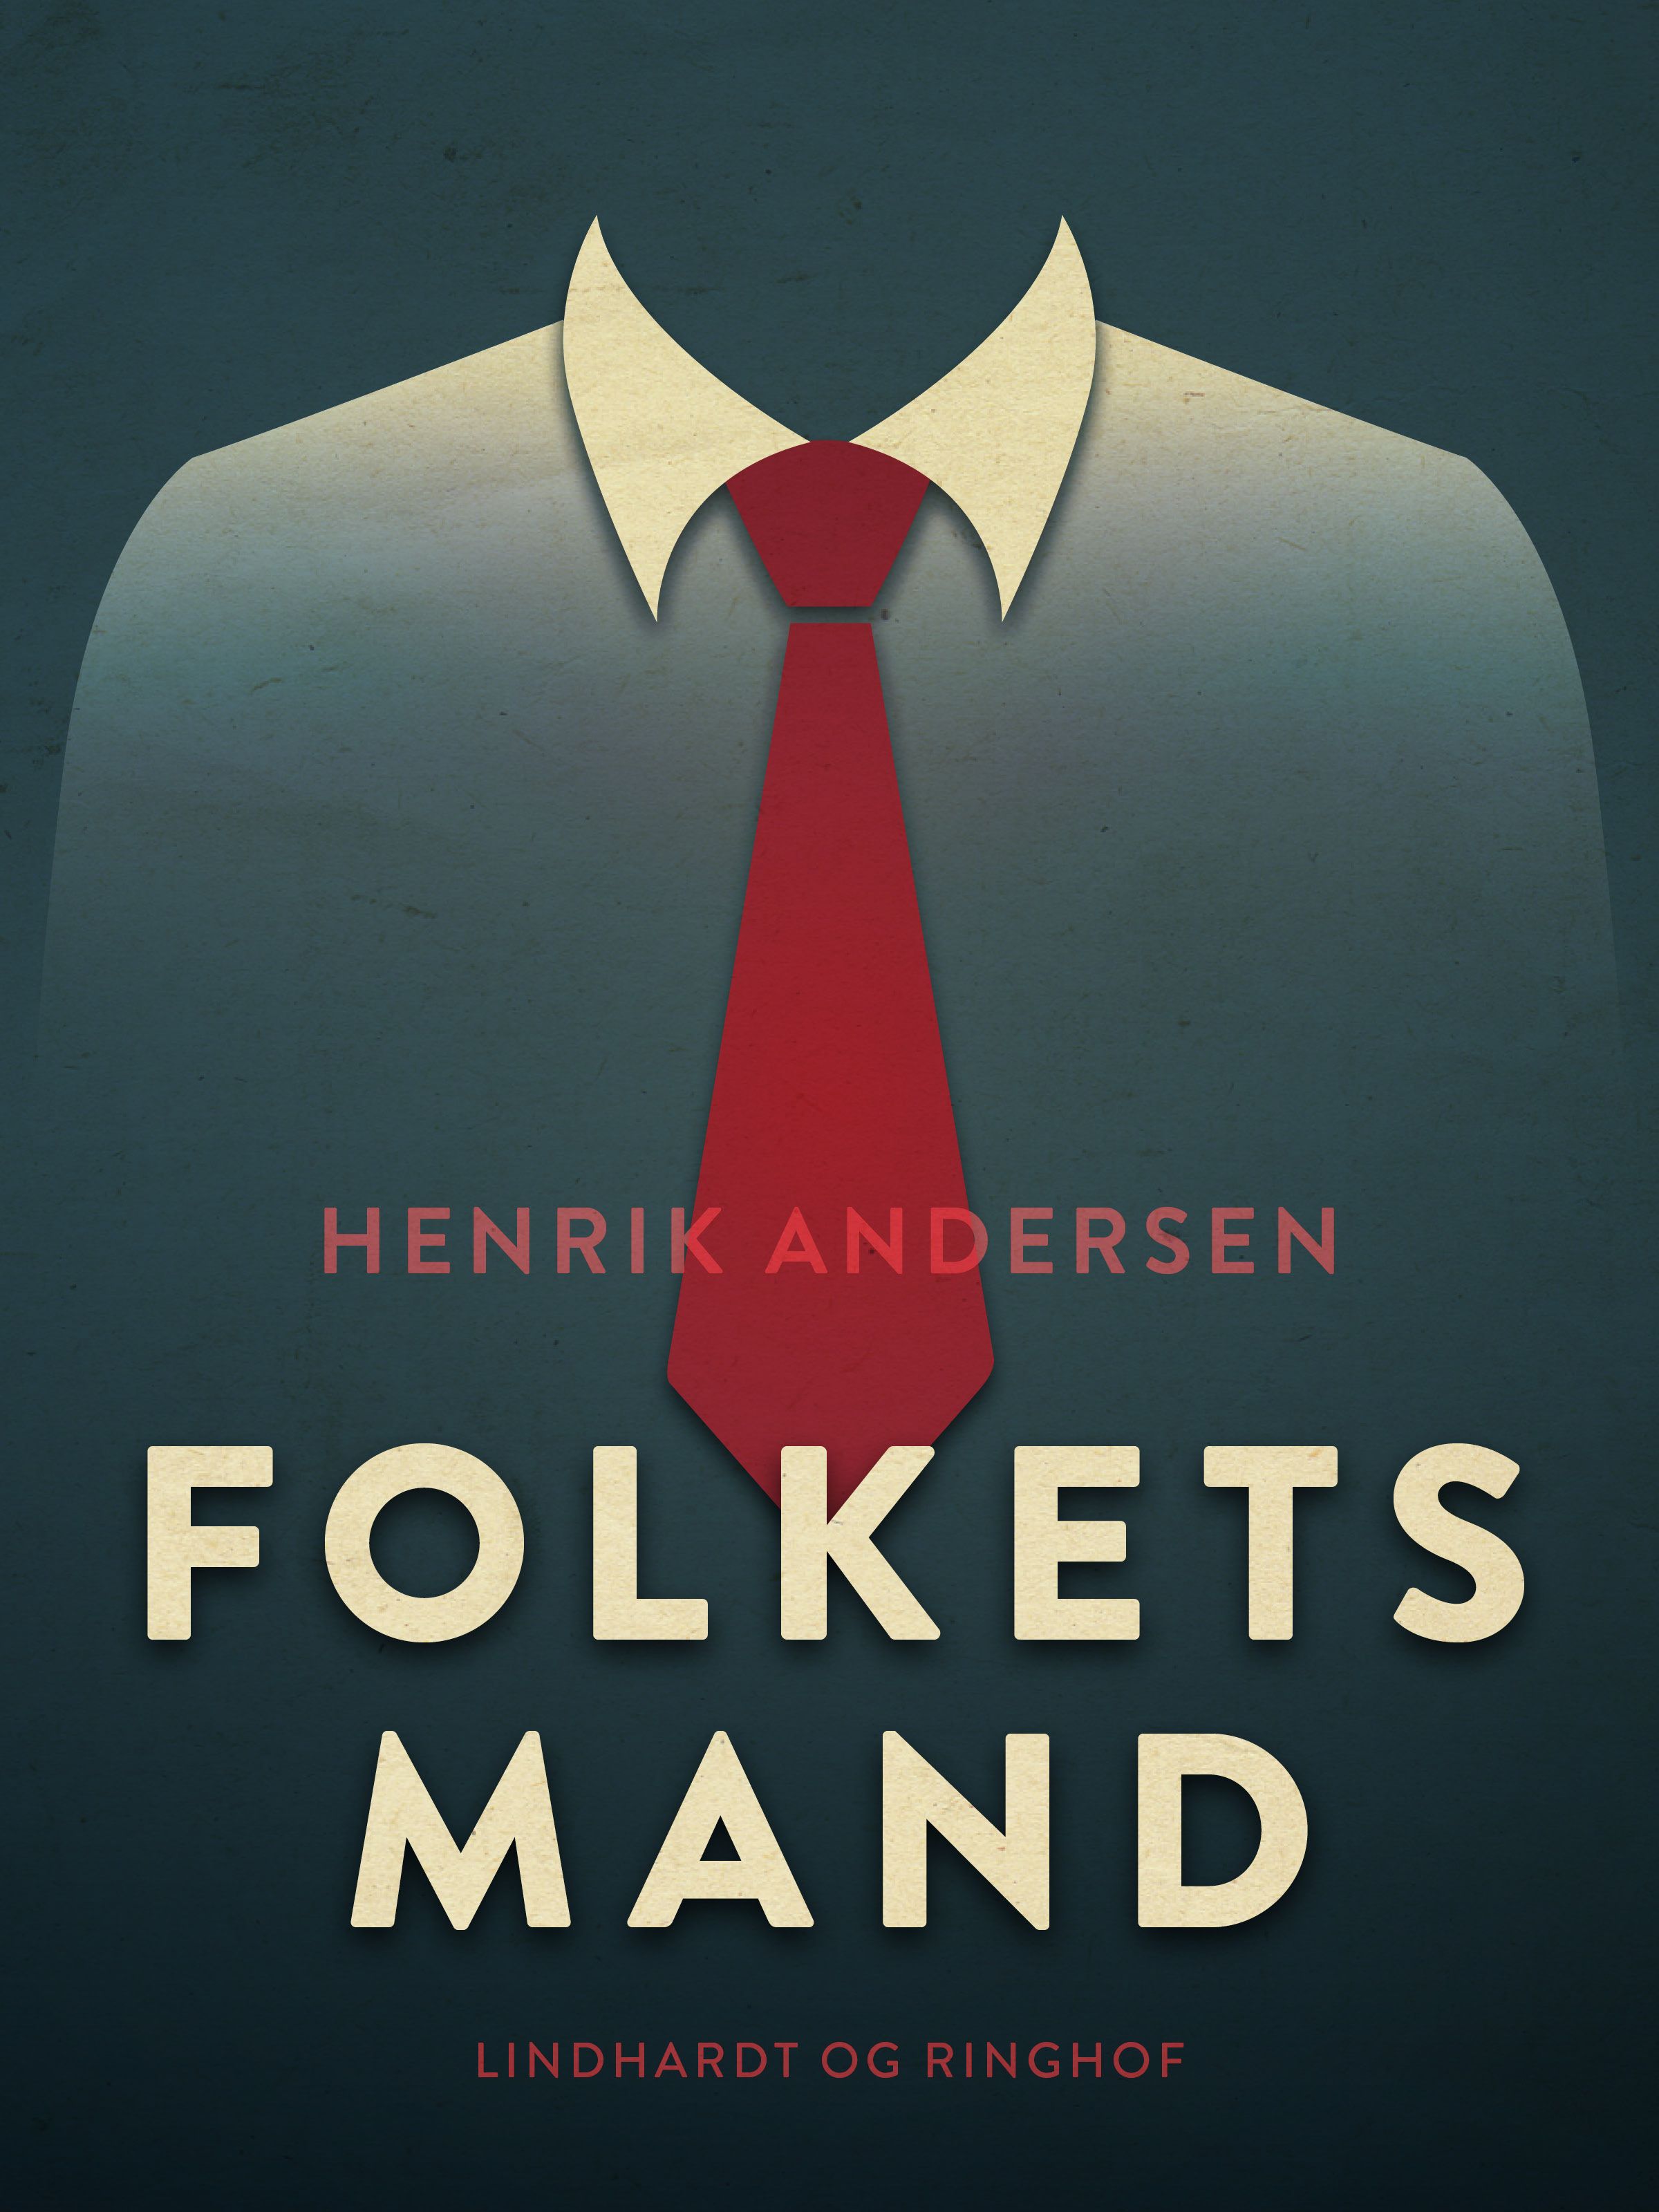 Folkets mand, e-bok av Henrik Andersen